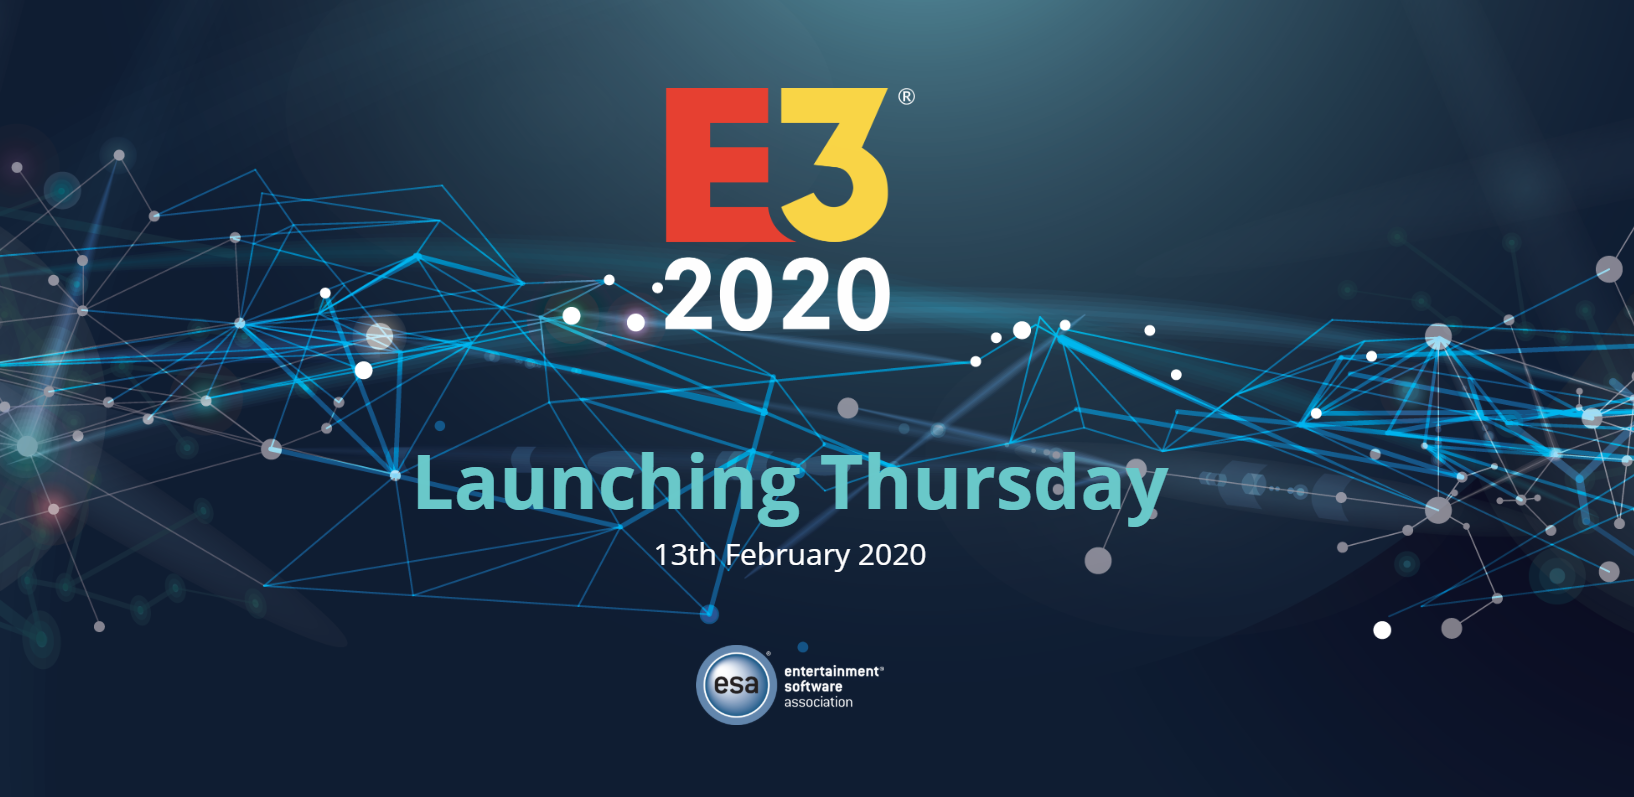 微软、任天堂、育碧、T2等大厂仍会参加E3 2020